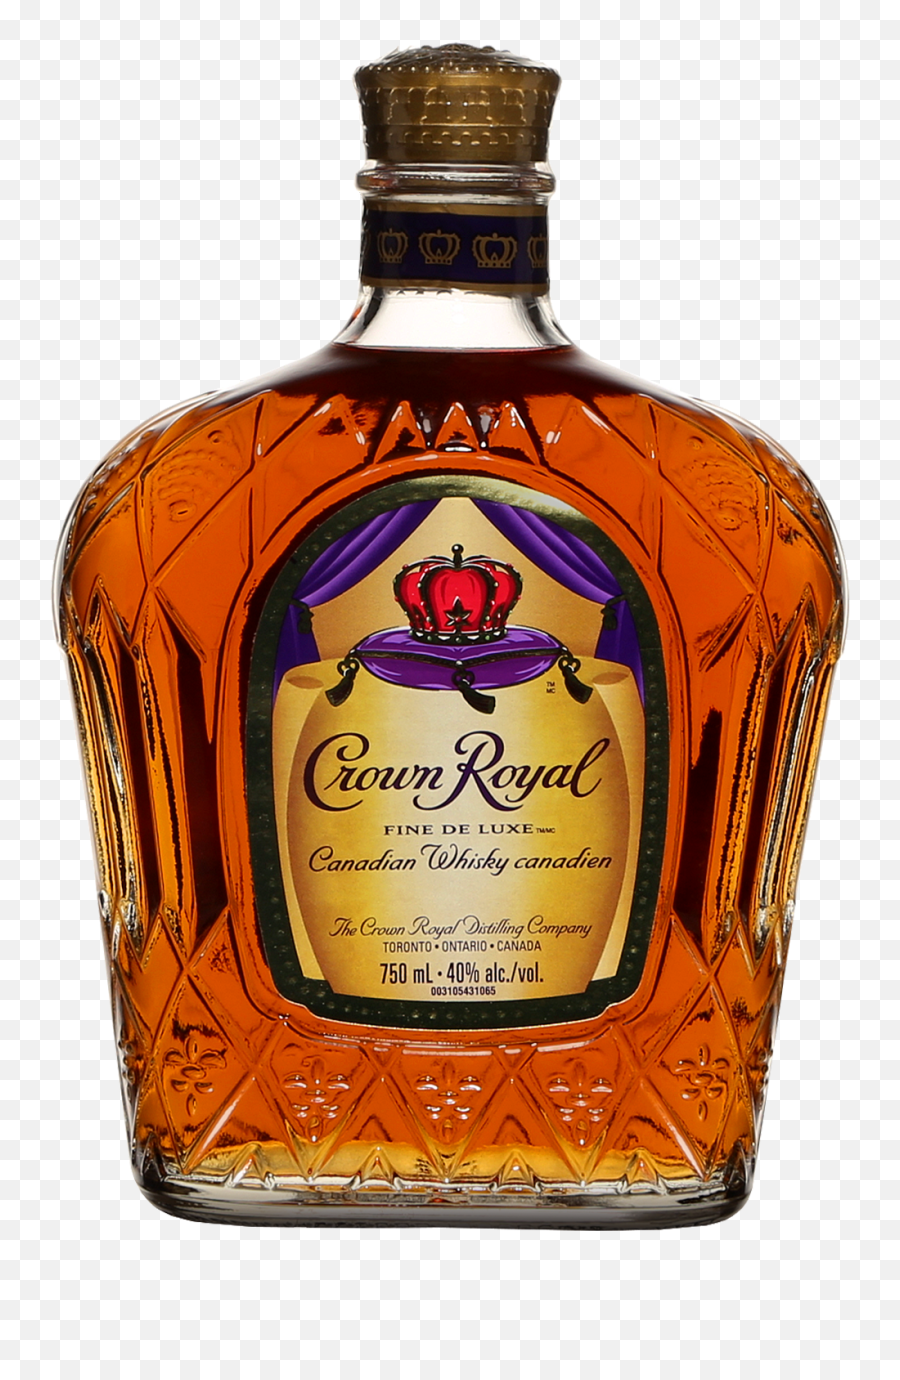 Crown Royal - Crown Royal Saq Png,Crown Royal Png